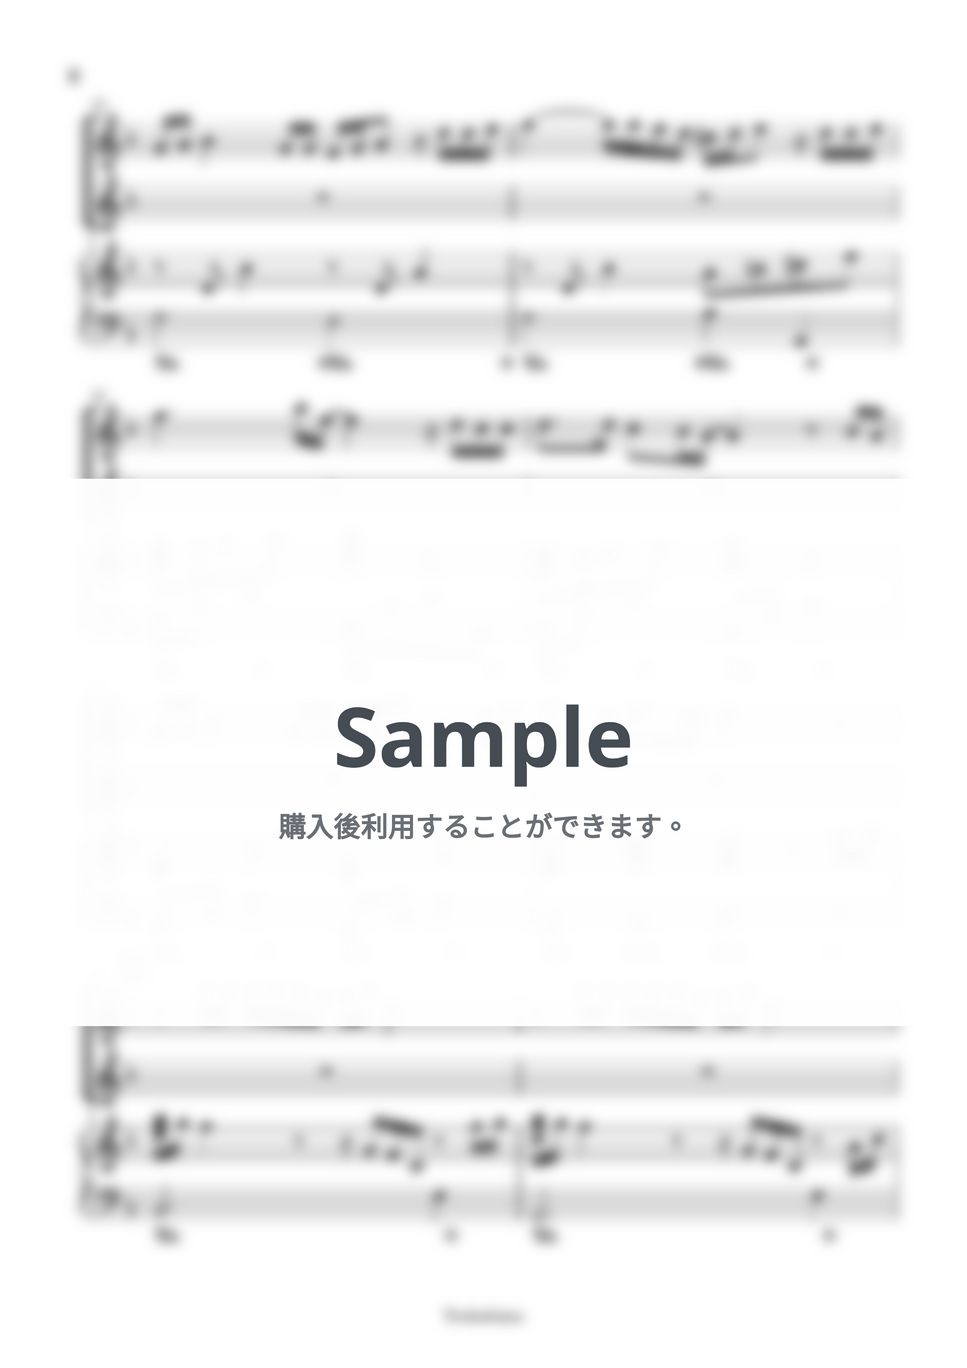 いきものがかり - YELL (2声+伴奏/合唱アレンジ) by Trohishima